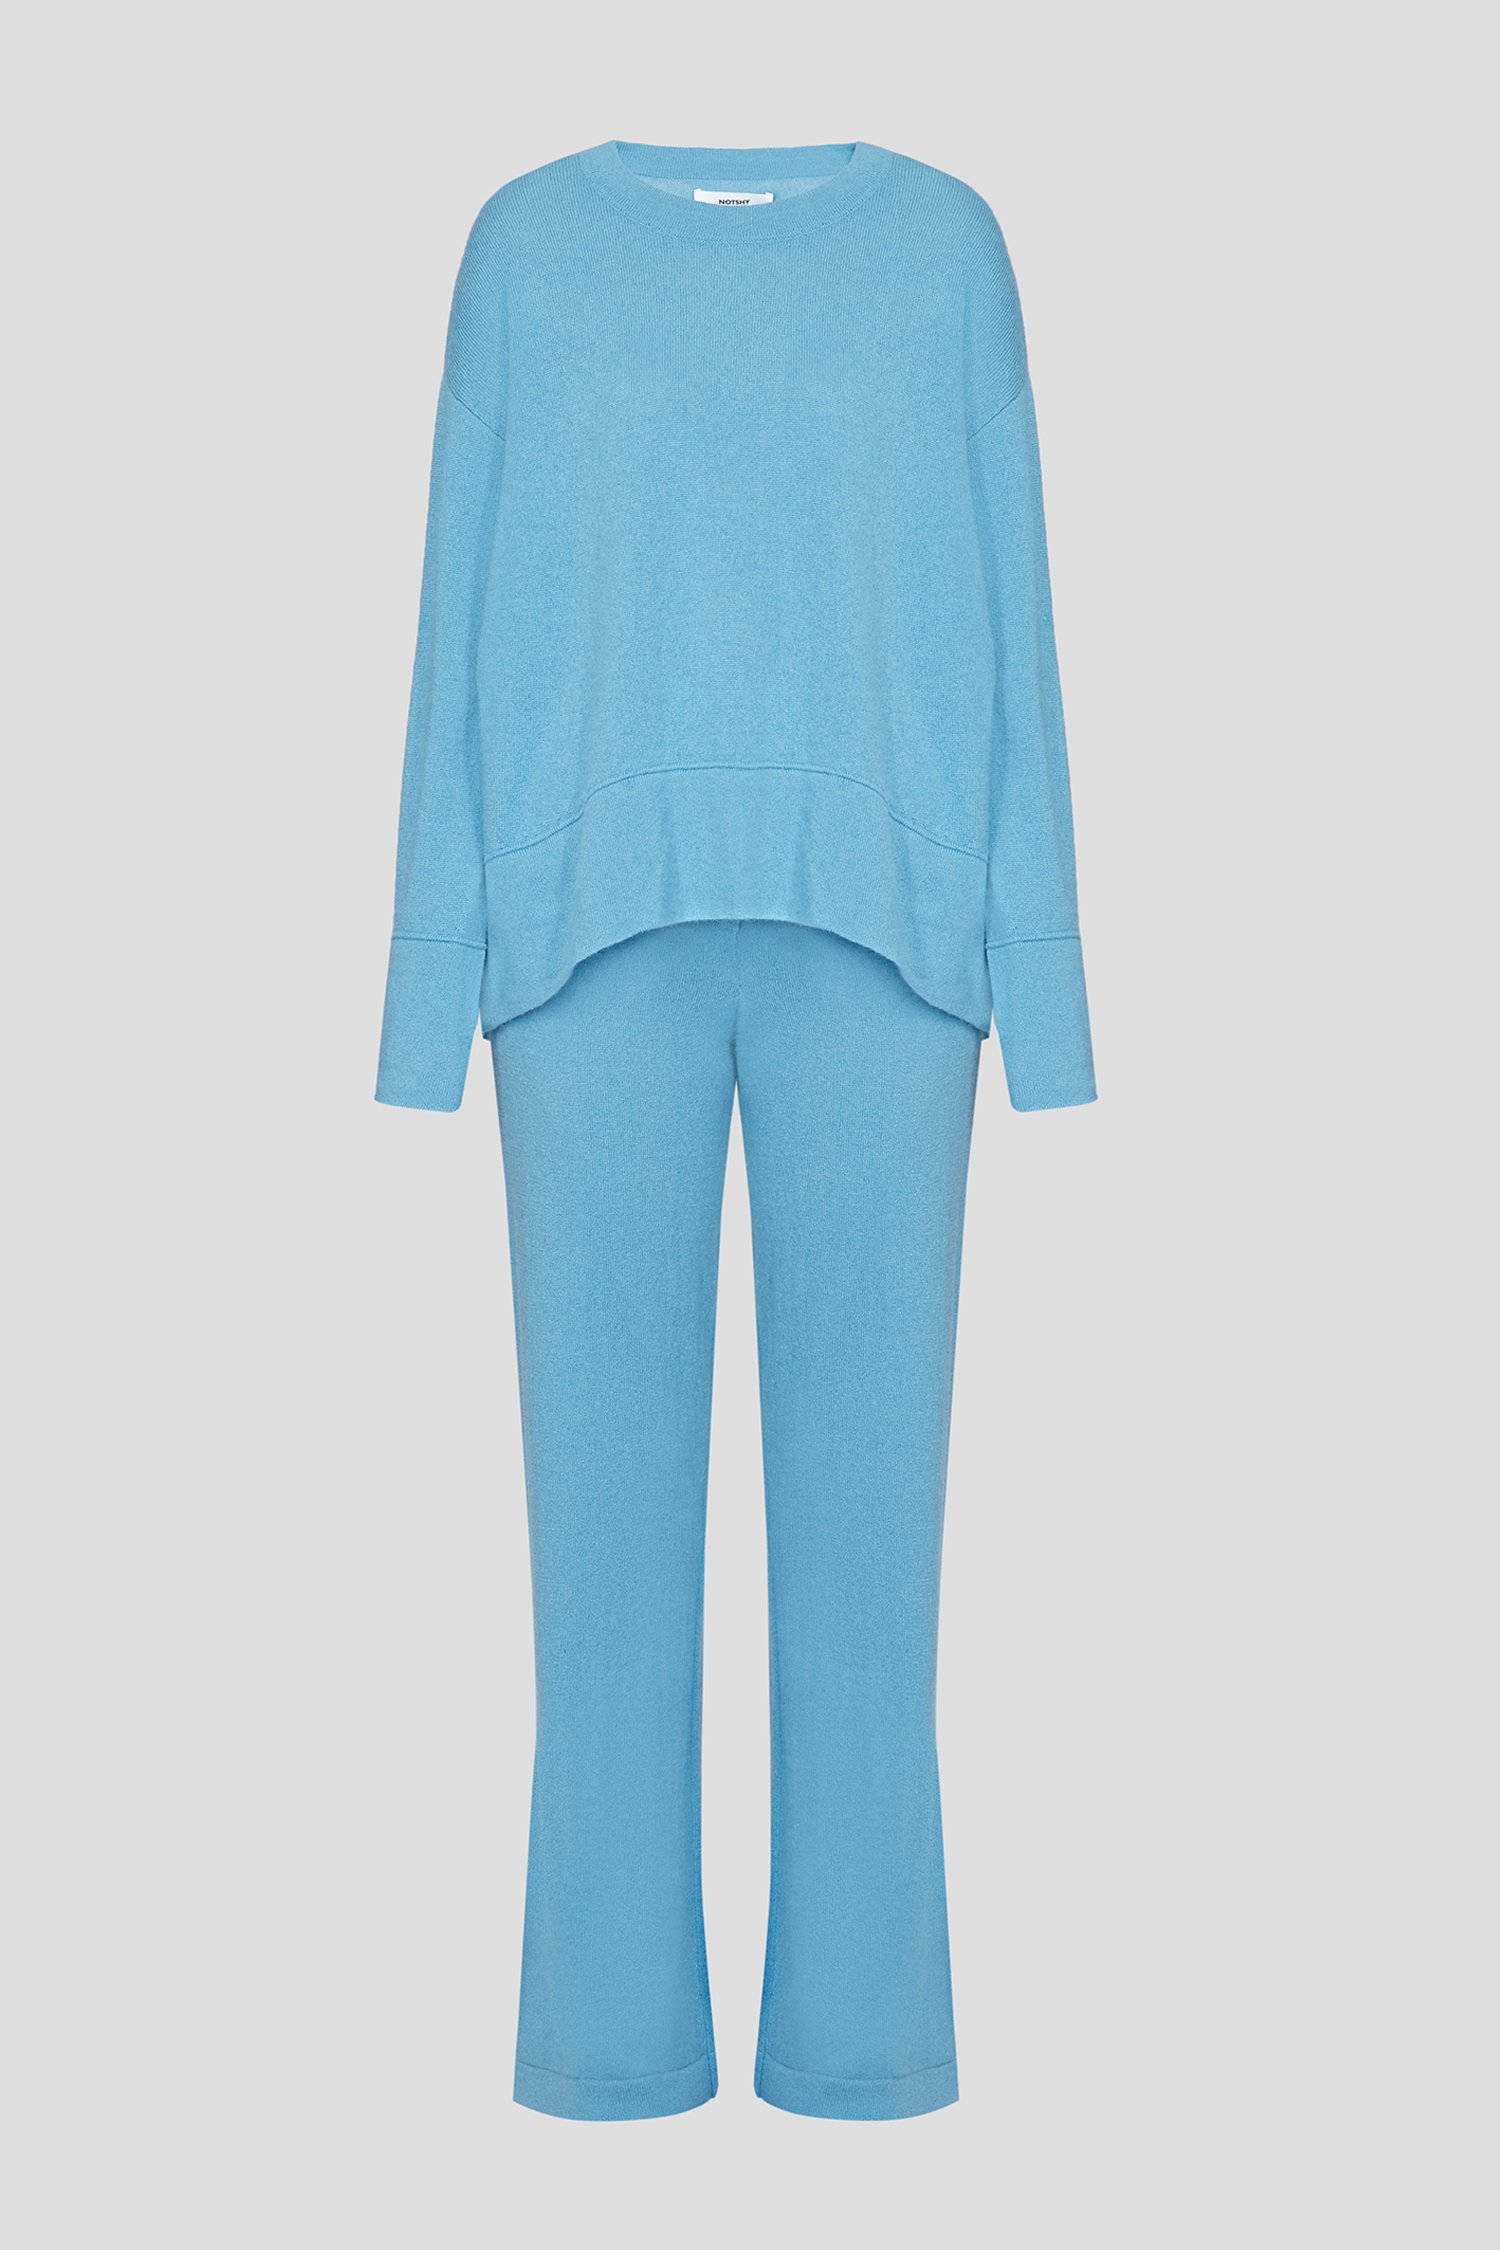 Женский голубой кашемировый костюм (джемпер, брюки) 1